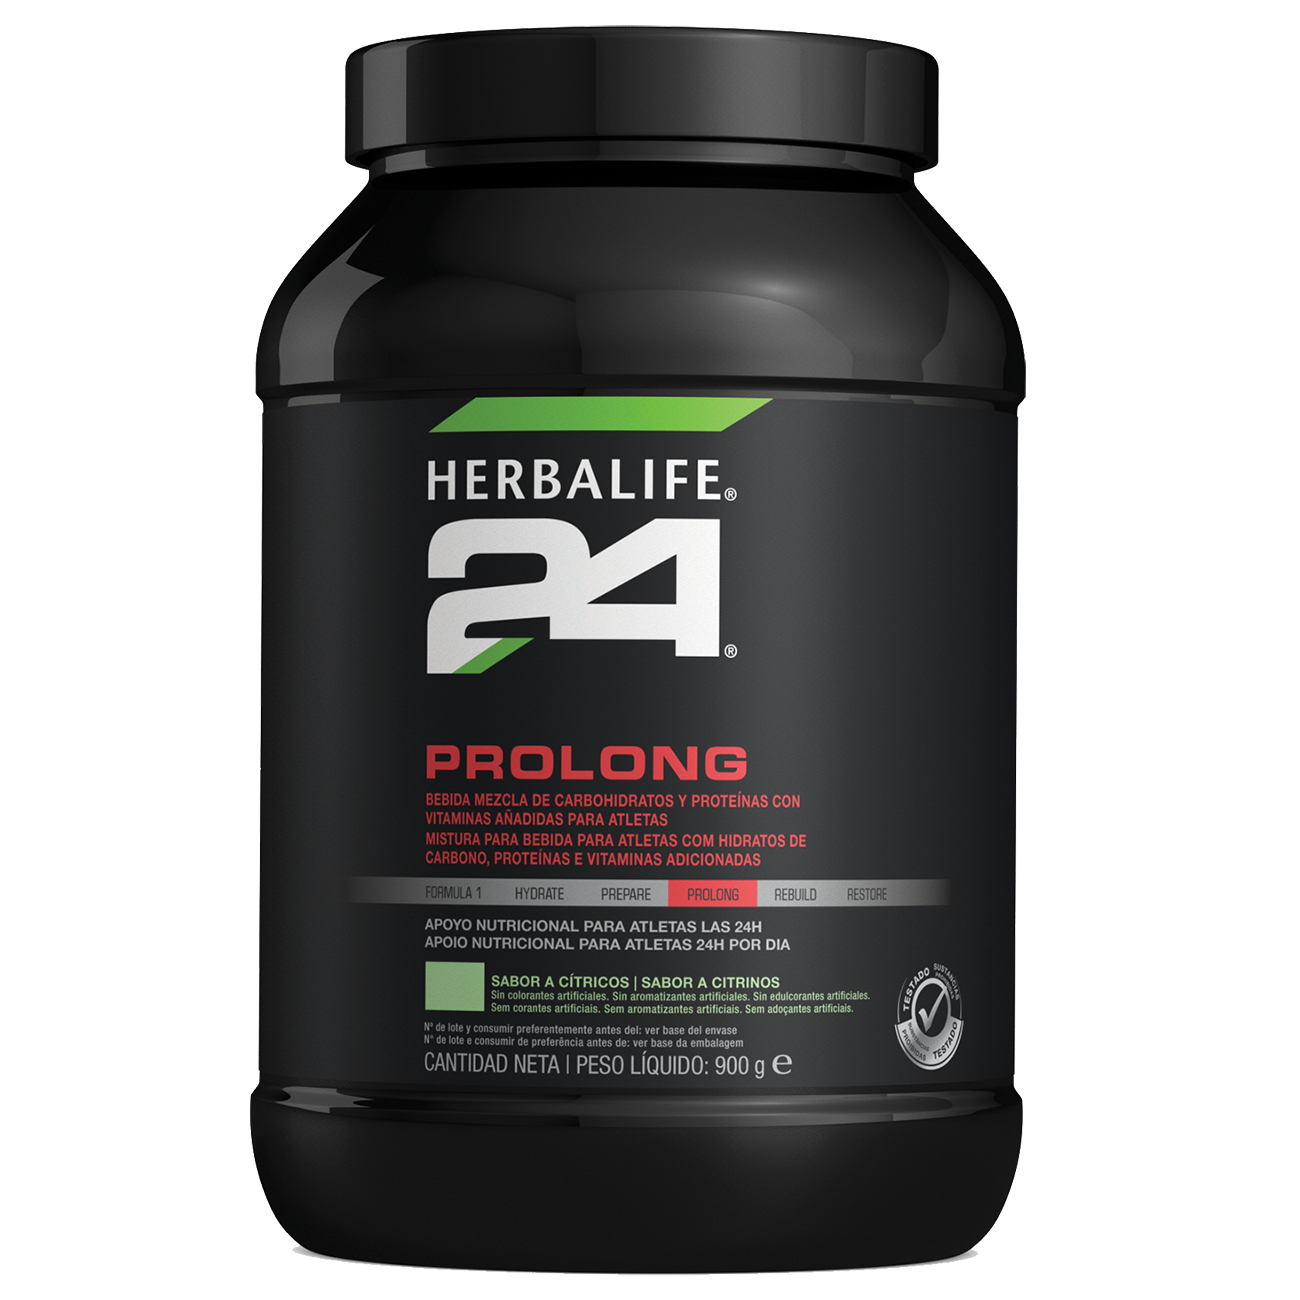 Herbalife 24 Prolong Nutrição Desportiva Citrinos   product shot